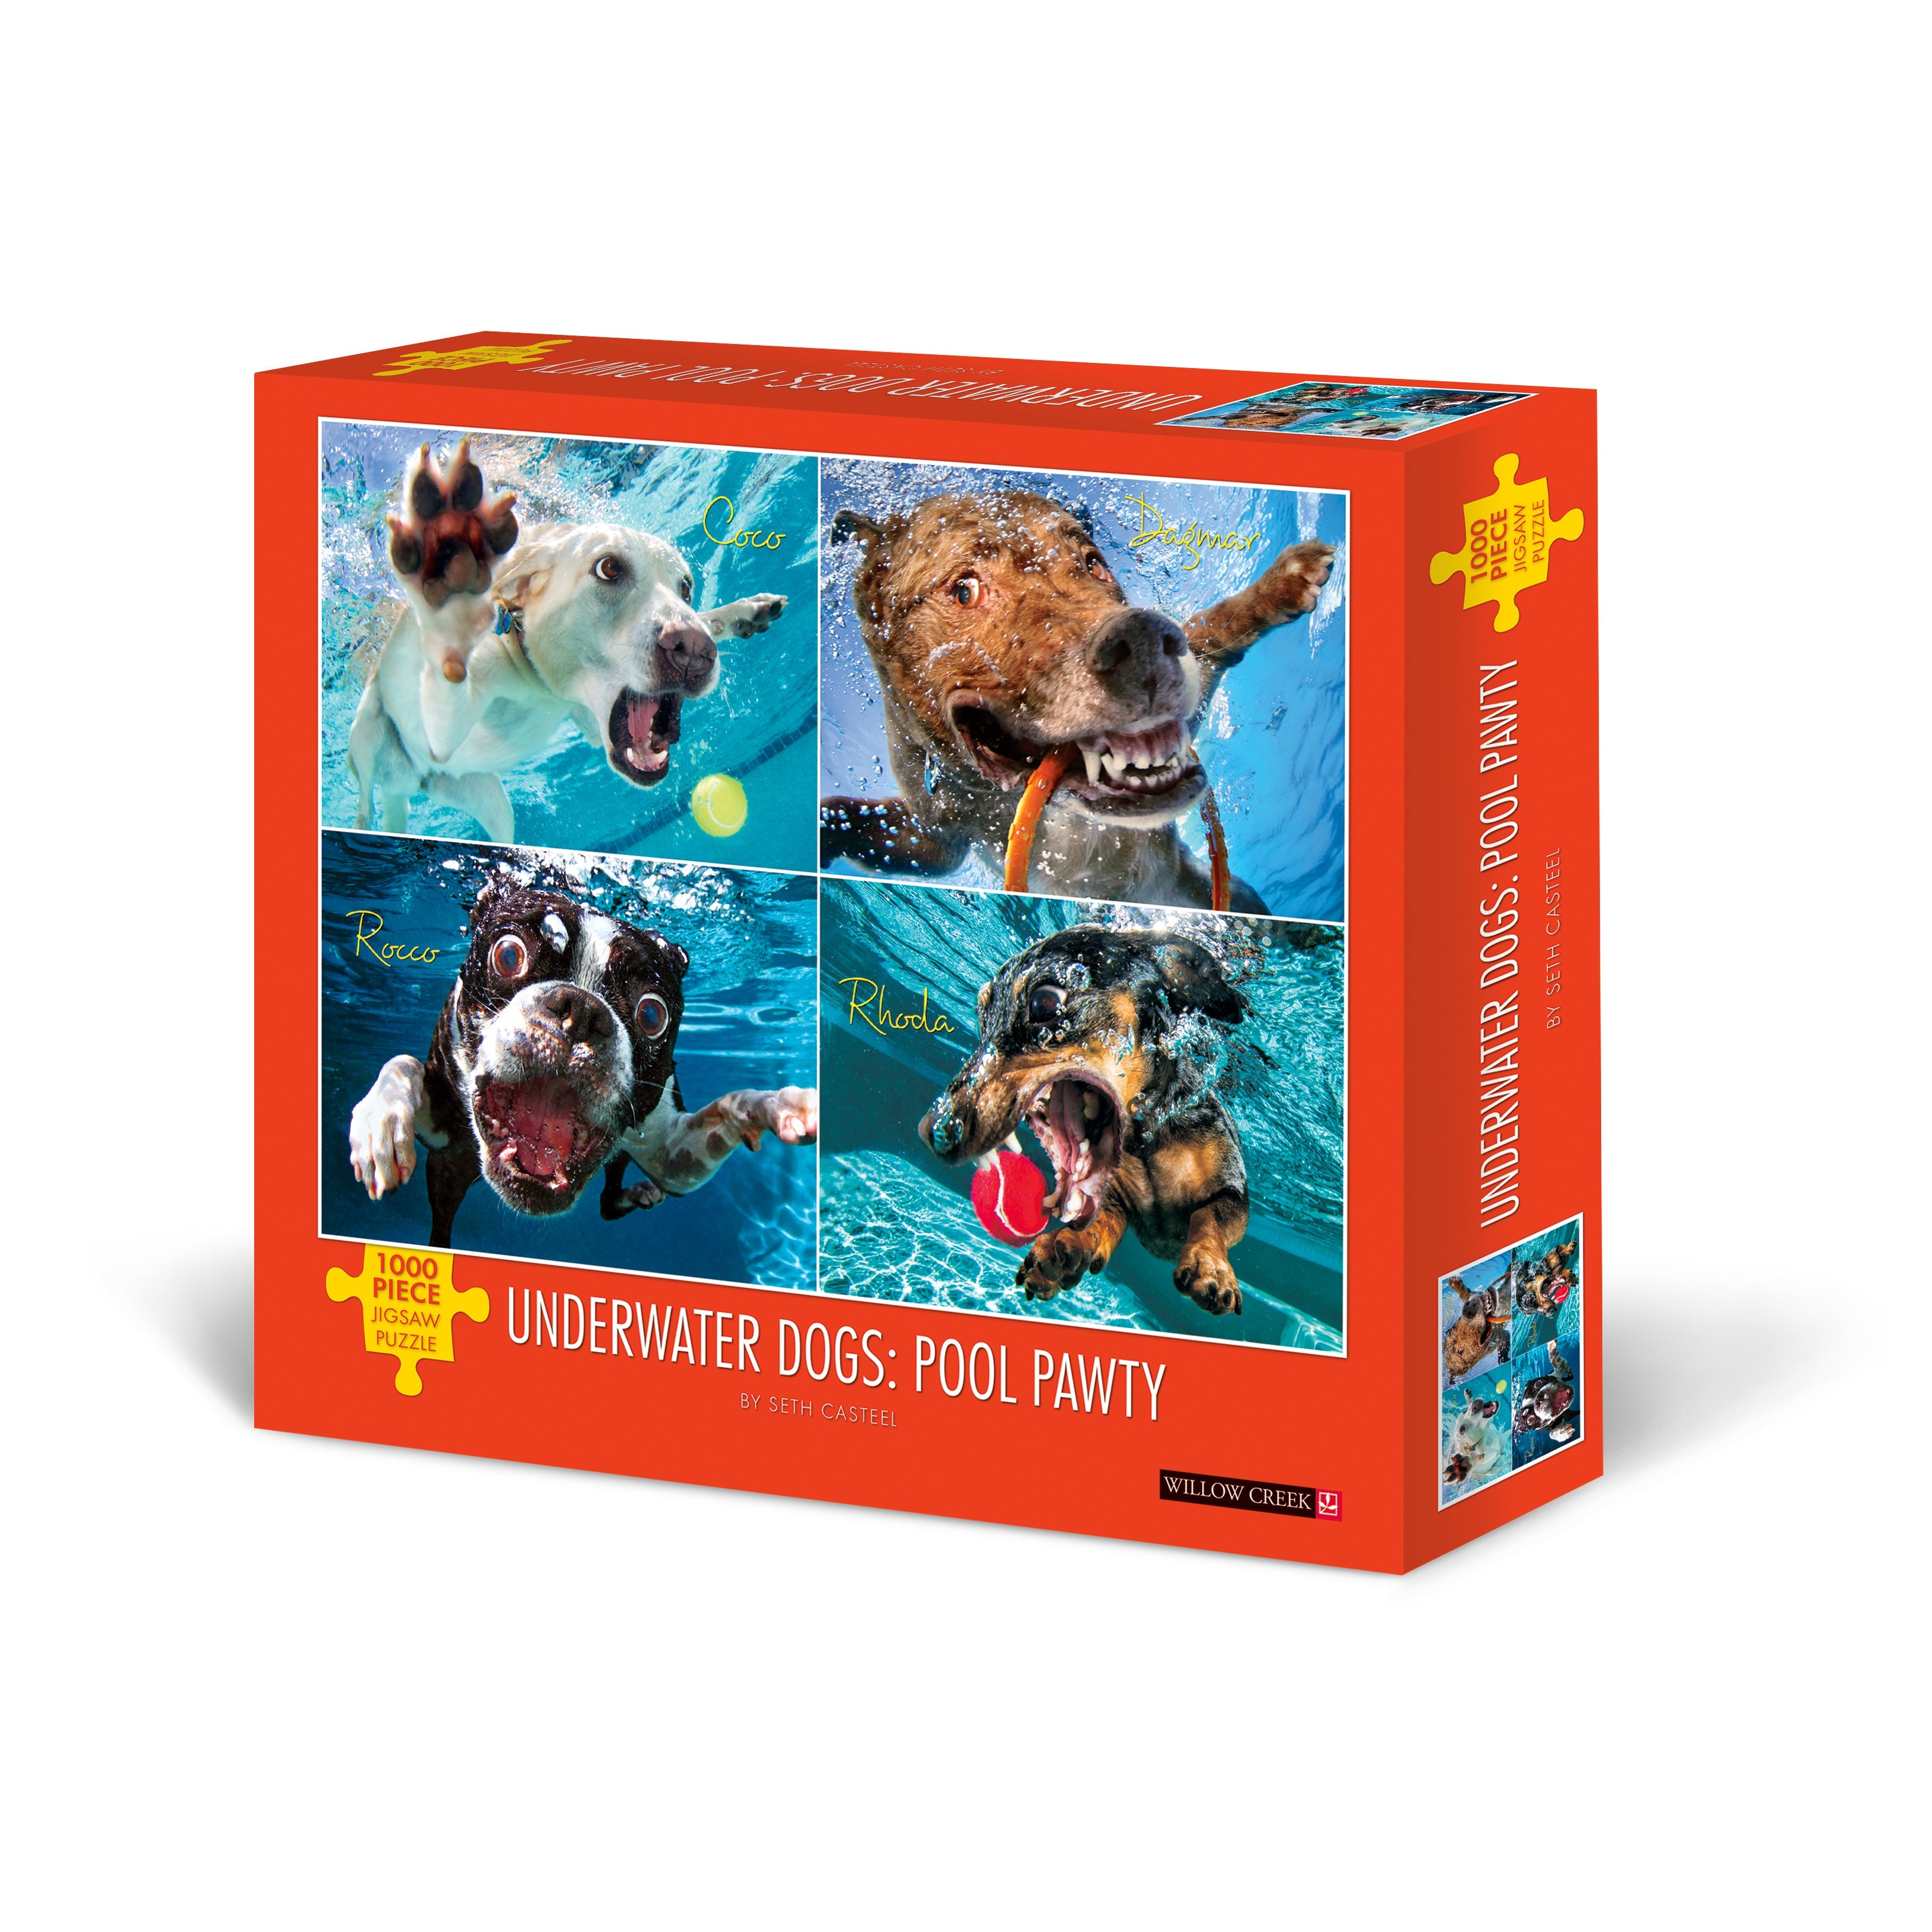 Underwater Dogs: Pool Pawty 1000 Piece - Jigsaw Puzzle